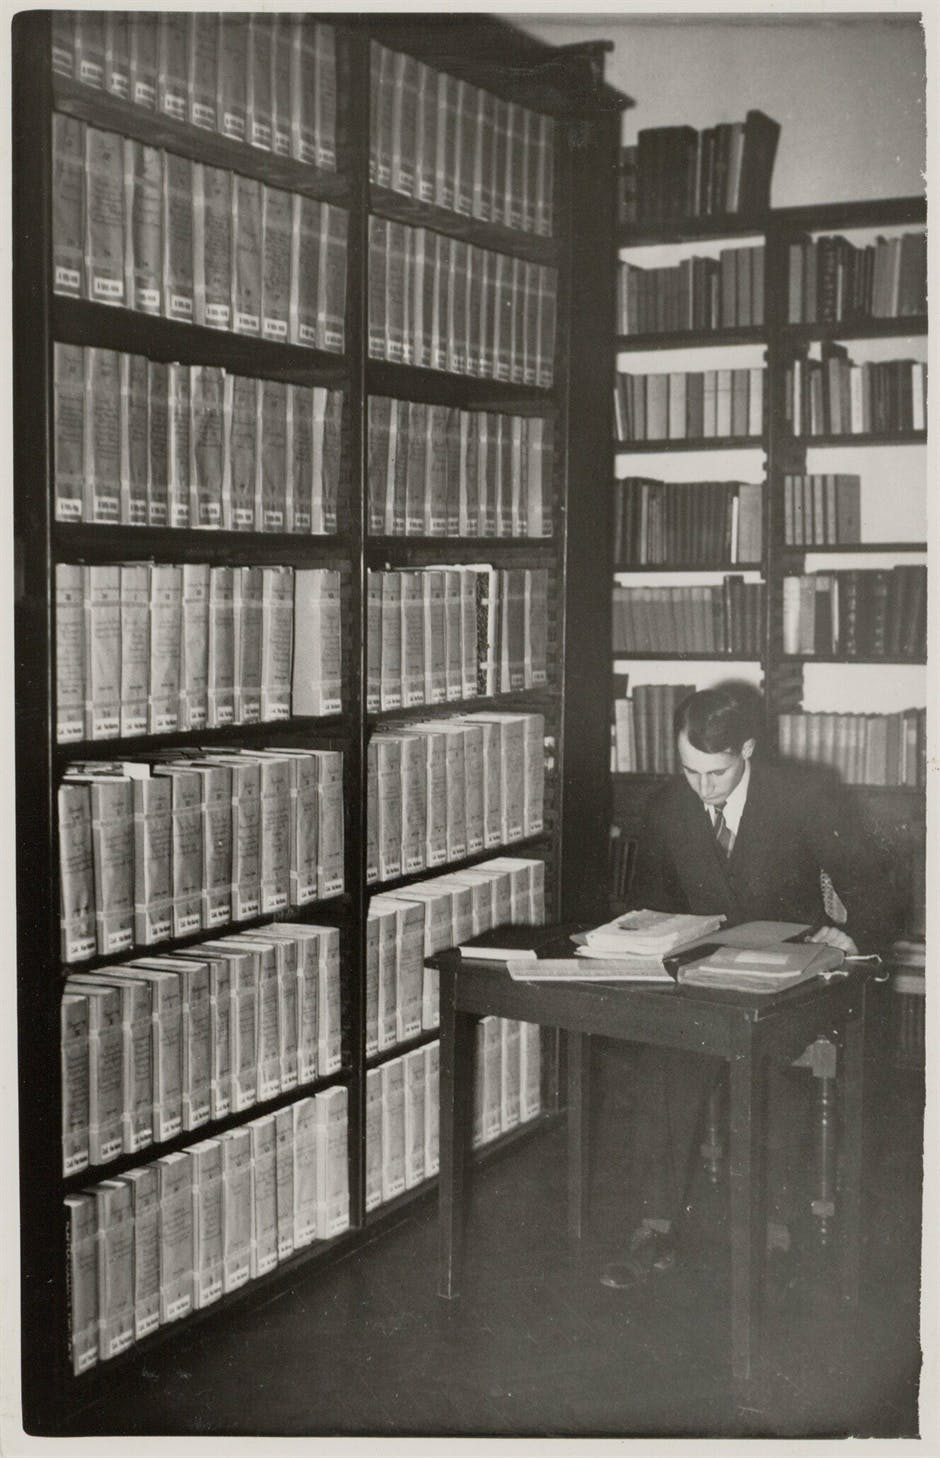 Gemeentearchief van Amsterdam; de oude Bibliotheek, 1941.